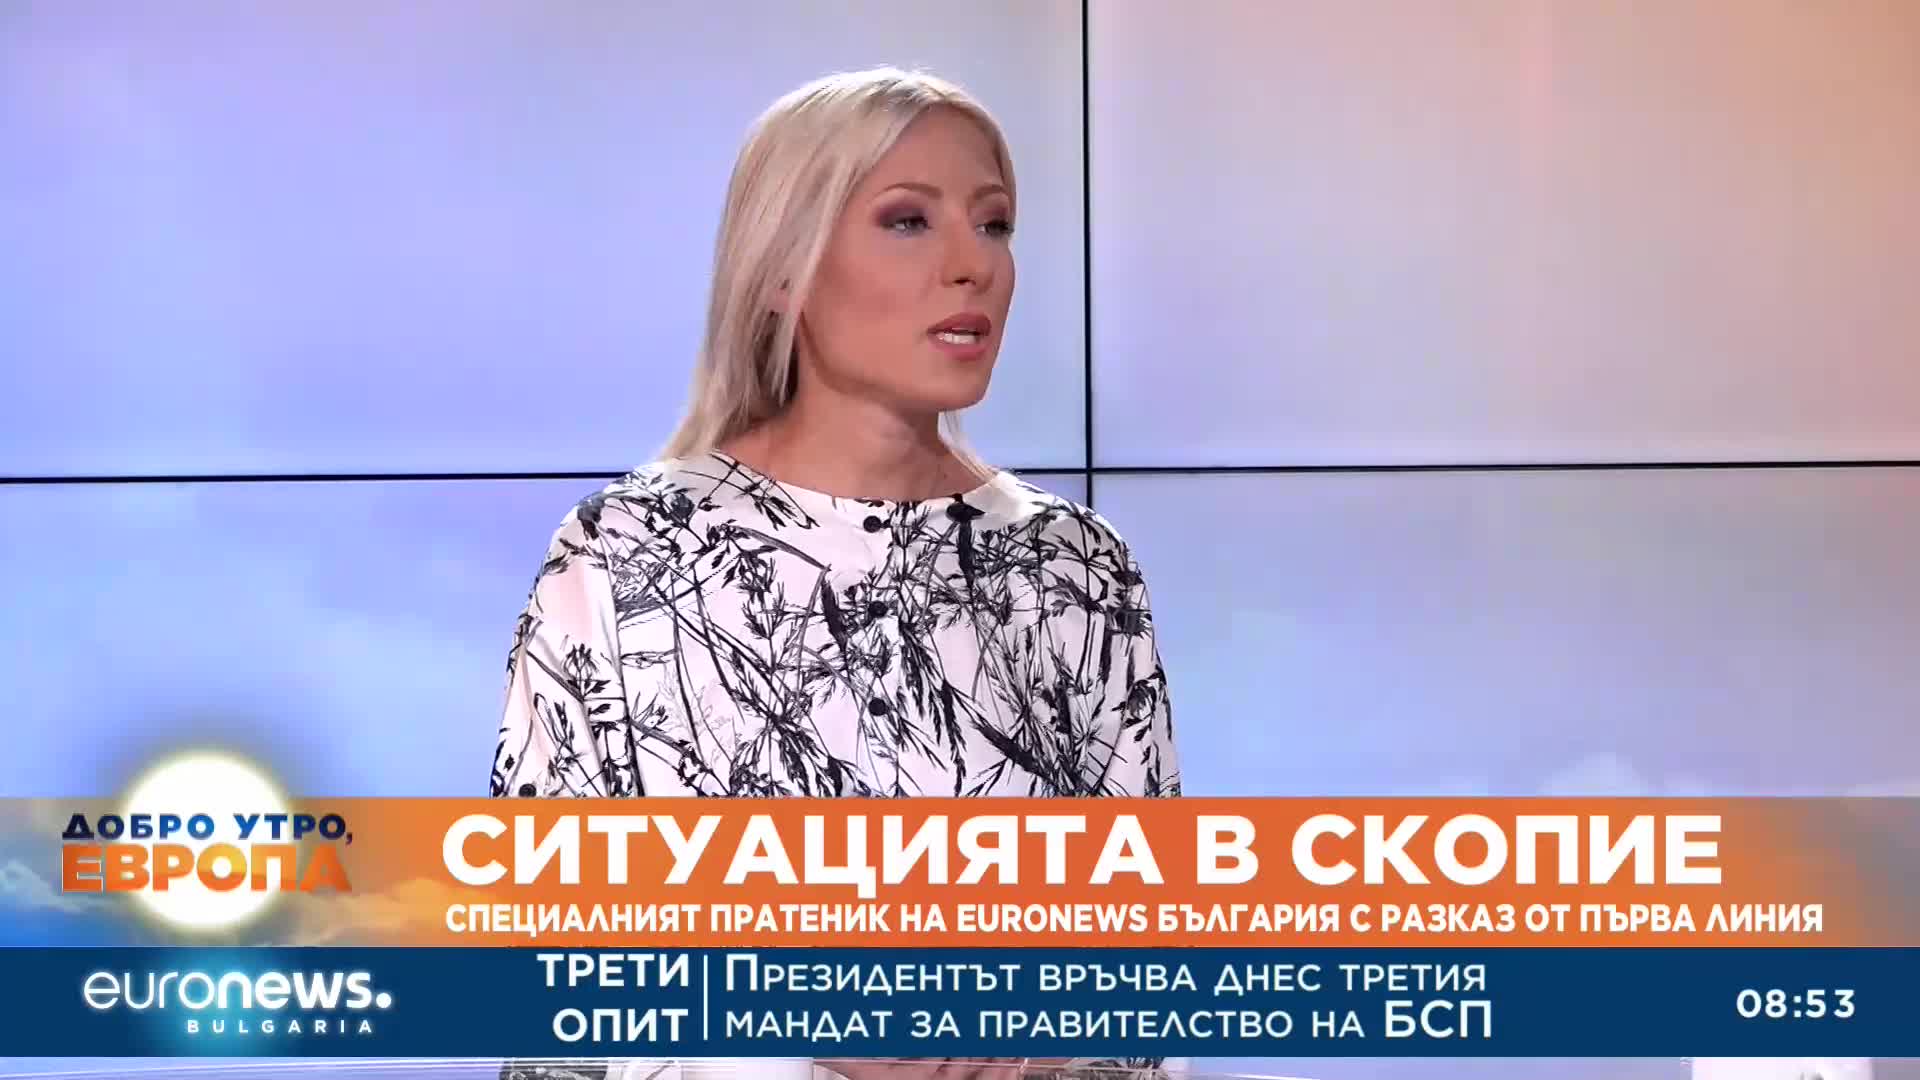 Специалният пратеник на Euronews Bulgaria в Скопие Камелия Колева с разказ от първо лице